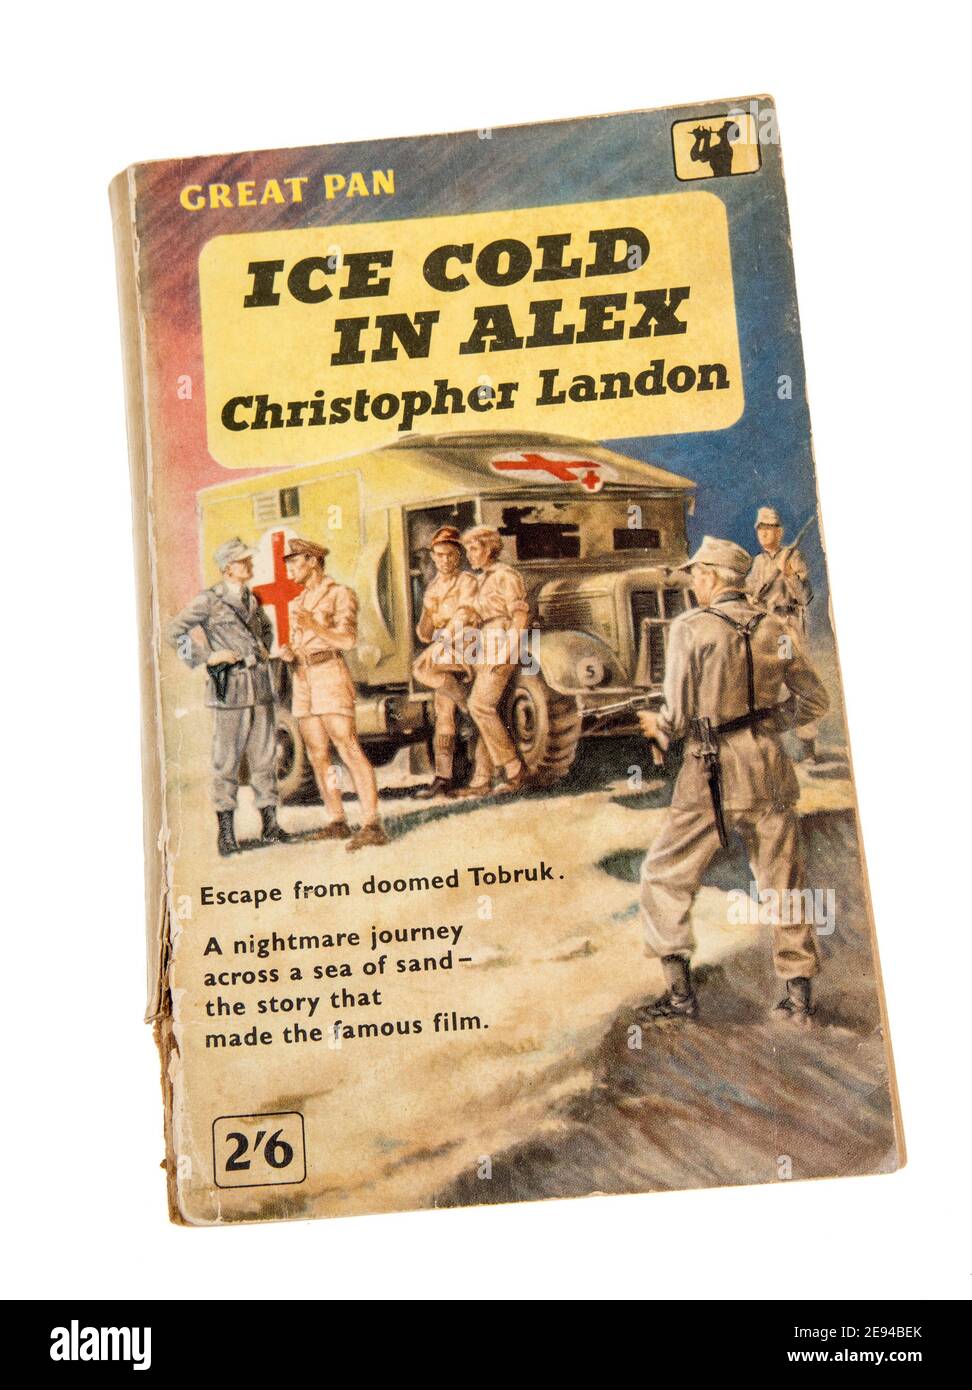 ICE Cold dans Alex, une histoire de guerre par Christopher Landon publié comme livre de poche par Pan en 1959, publié pour la première fois en 1957 Banque D'Images